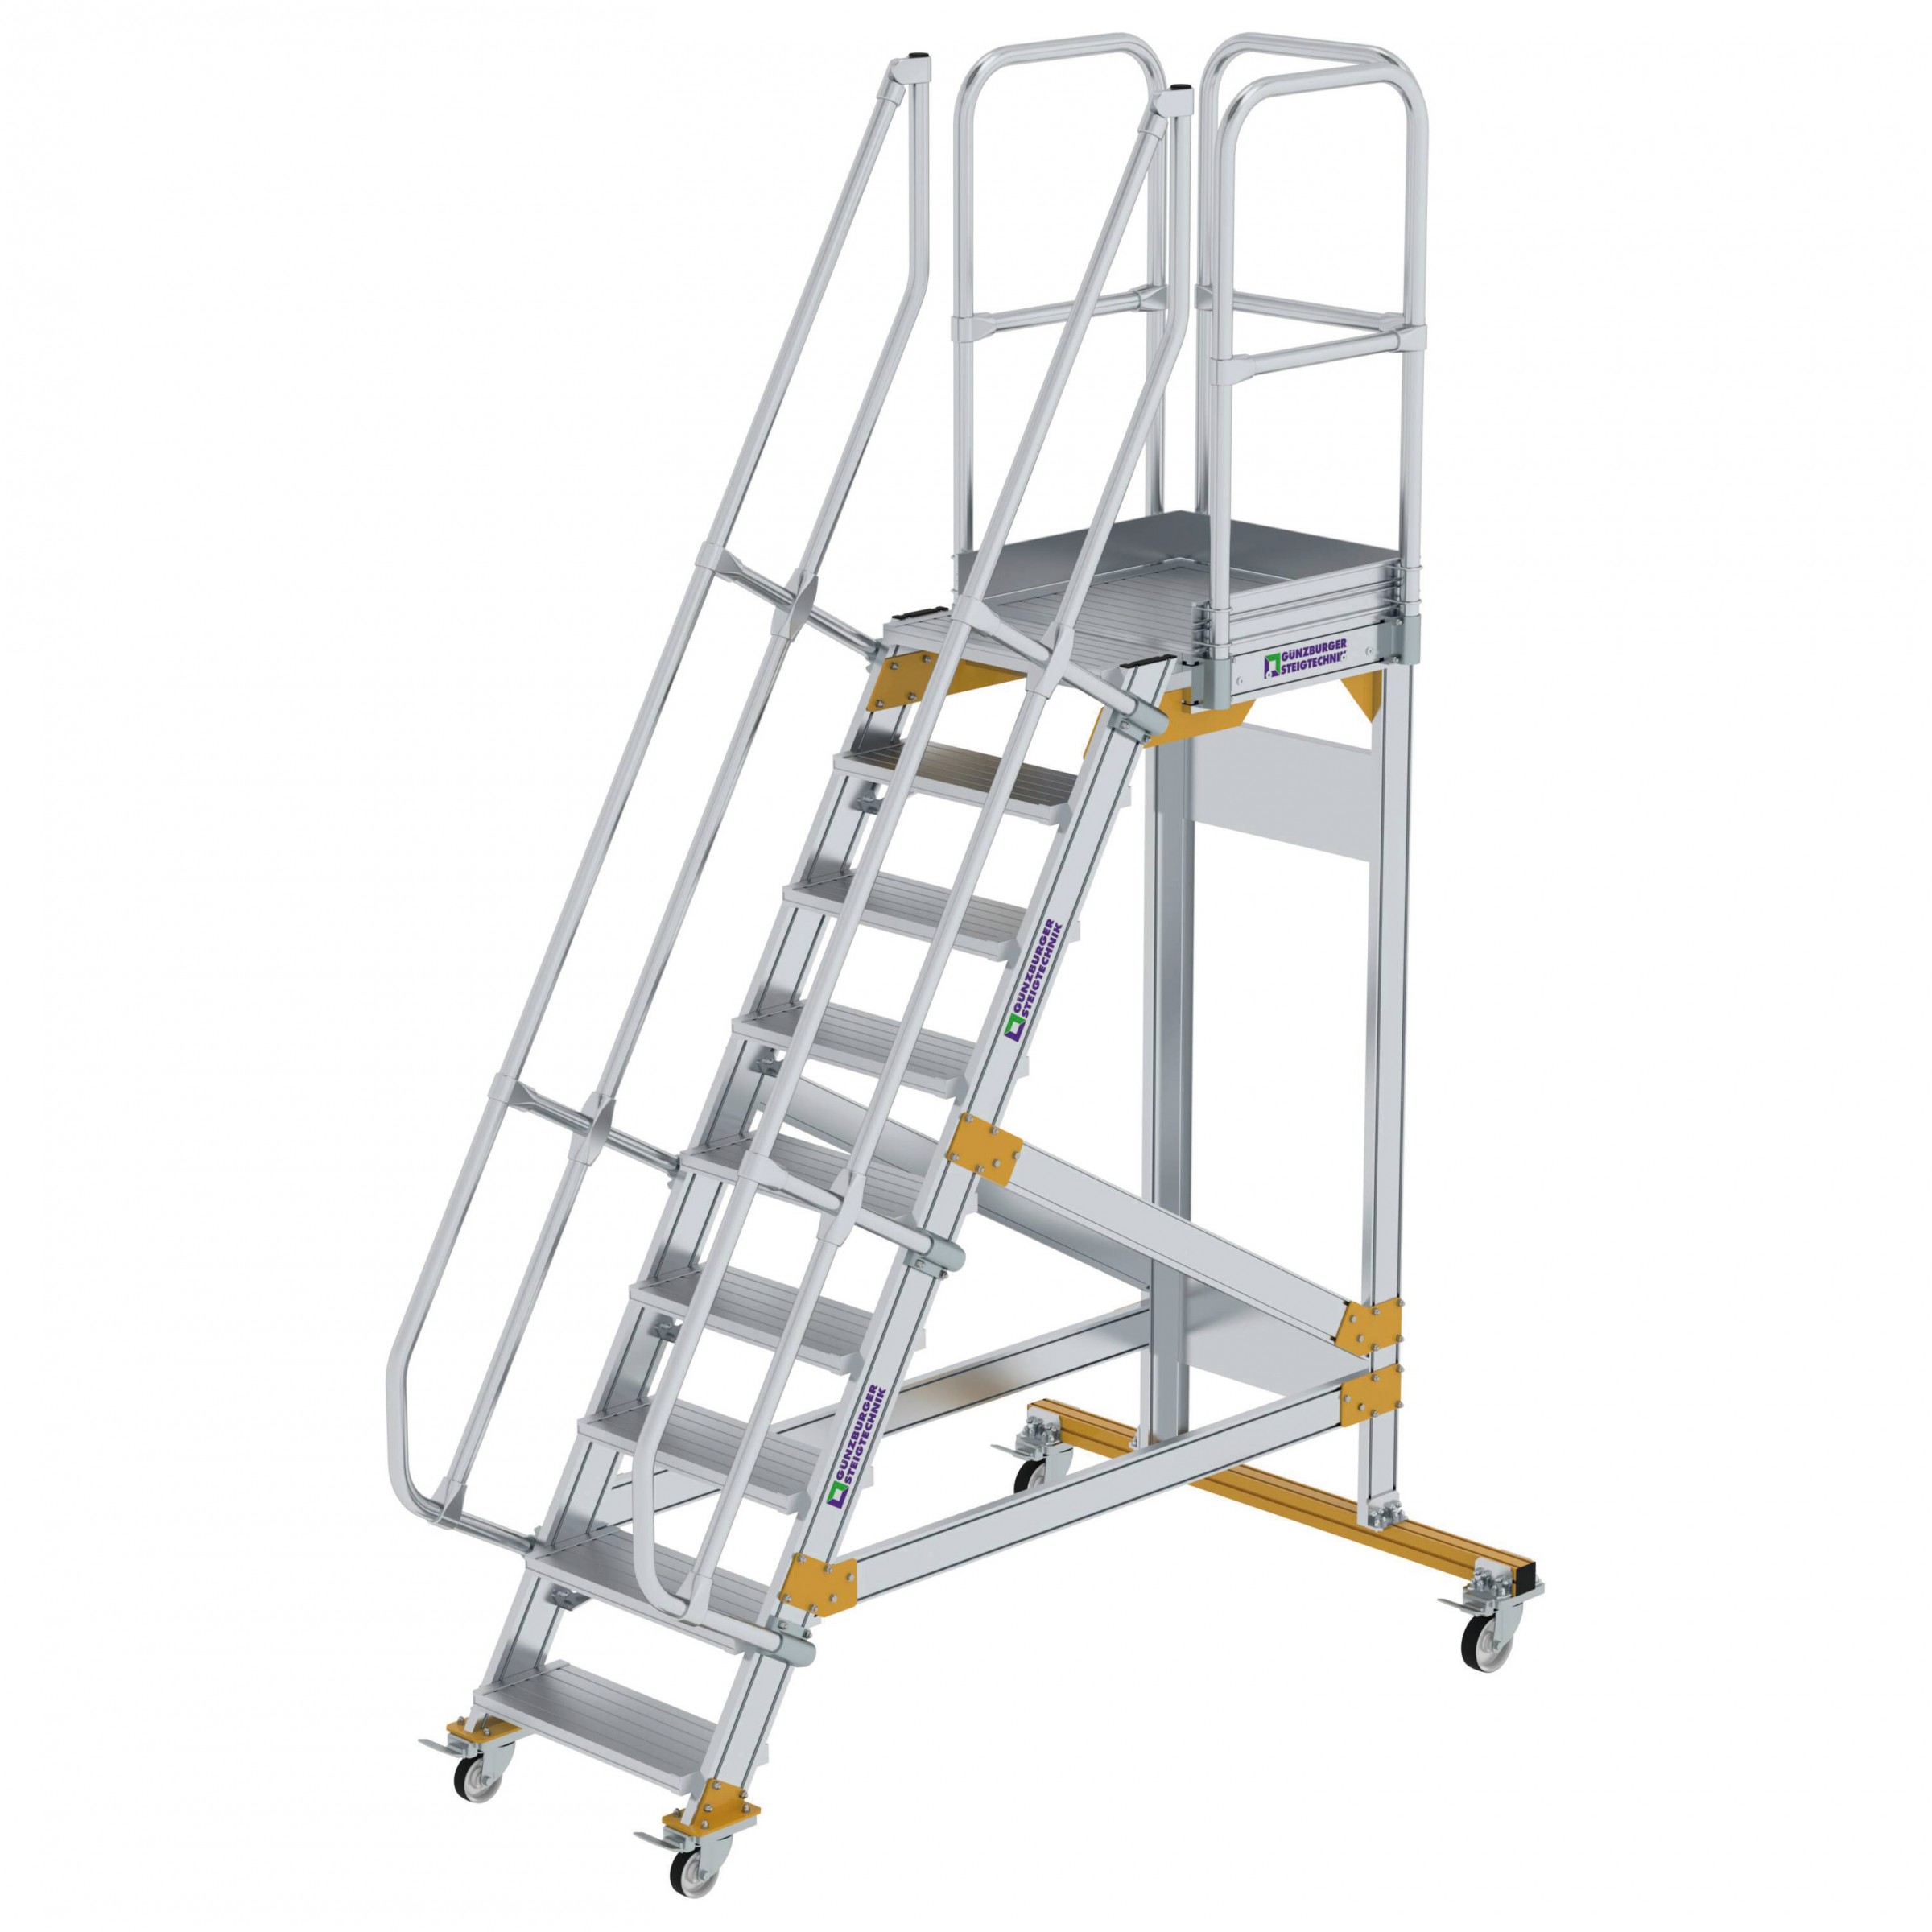 Aluminium-Plattform-Treppe fahrbar 60°, Stufenbreite 600 mm, 4 Stufen